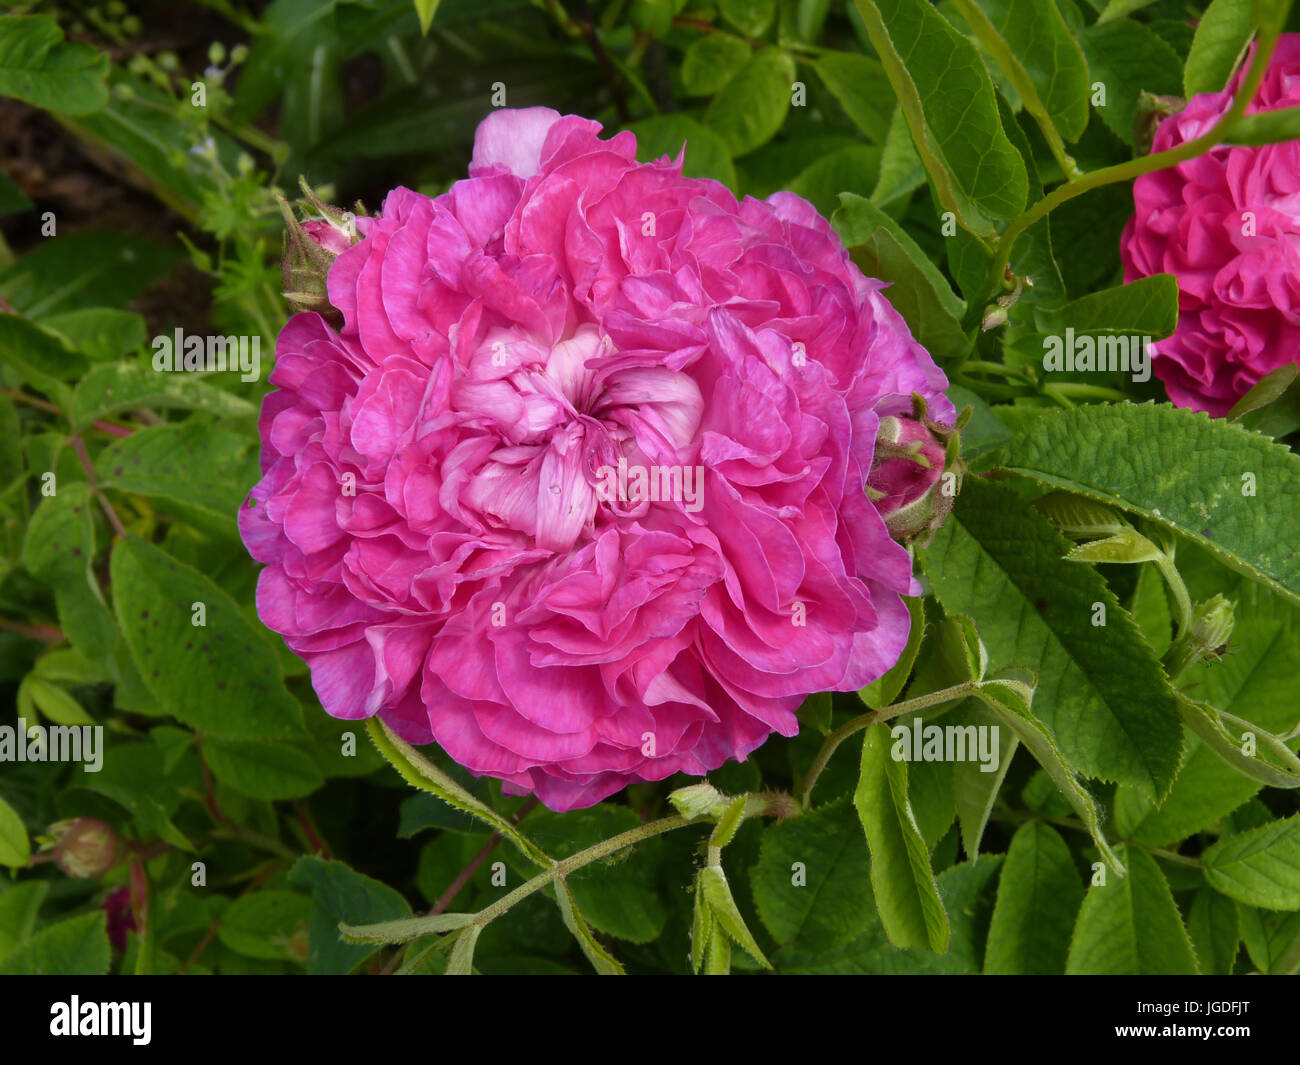 Pink rose flower in full bloom in garden or park Stock Photo